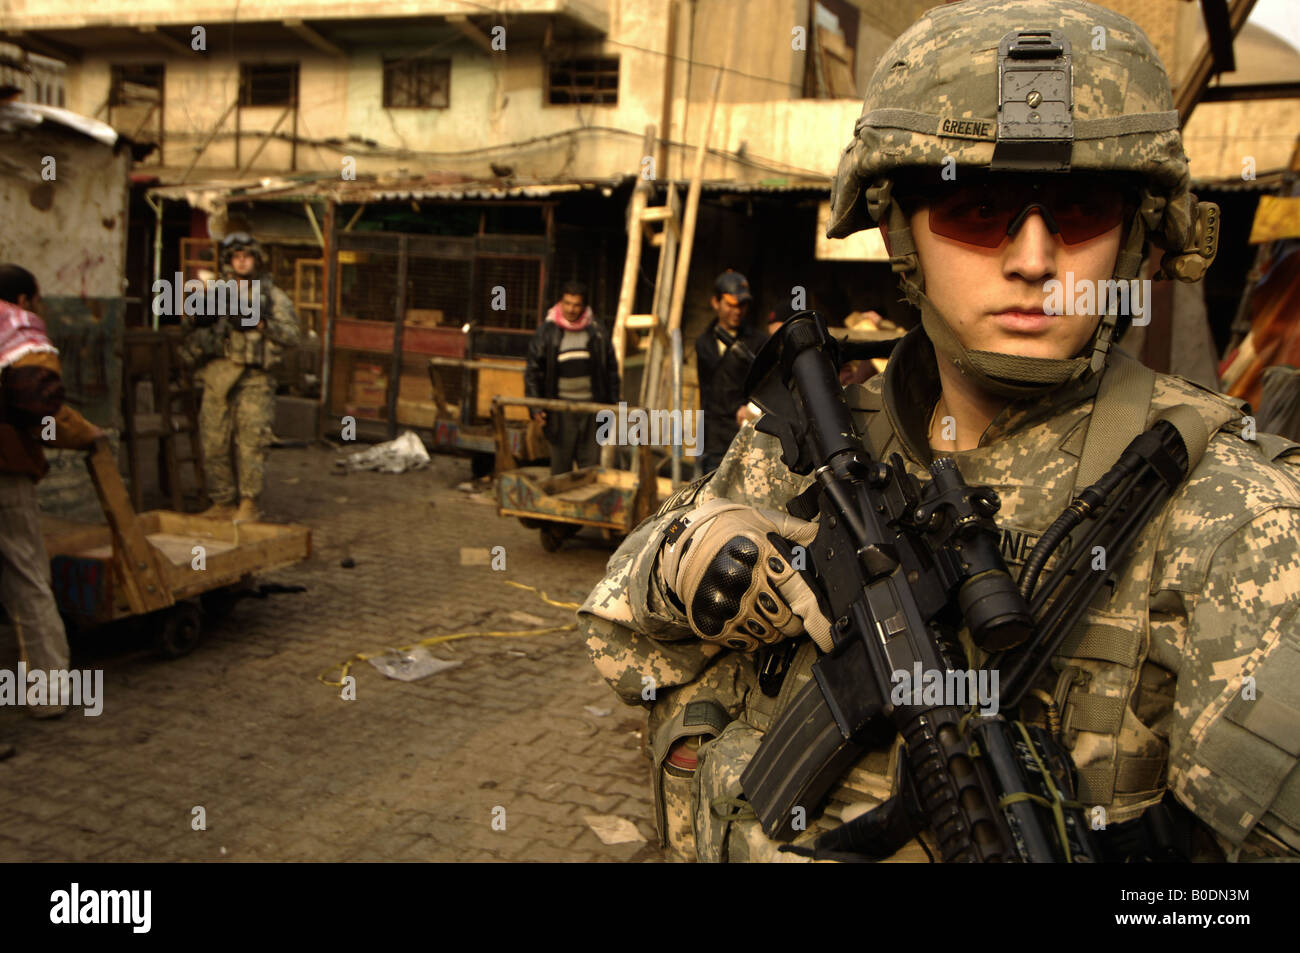 Soldado del ejército de los Estados Unidos busca dispositivo explosivo improvisado cachés de Rusafa en Bagdad, Irak el 28 de enero de 2008 Foto de stock